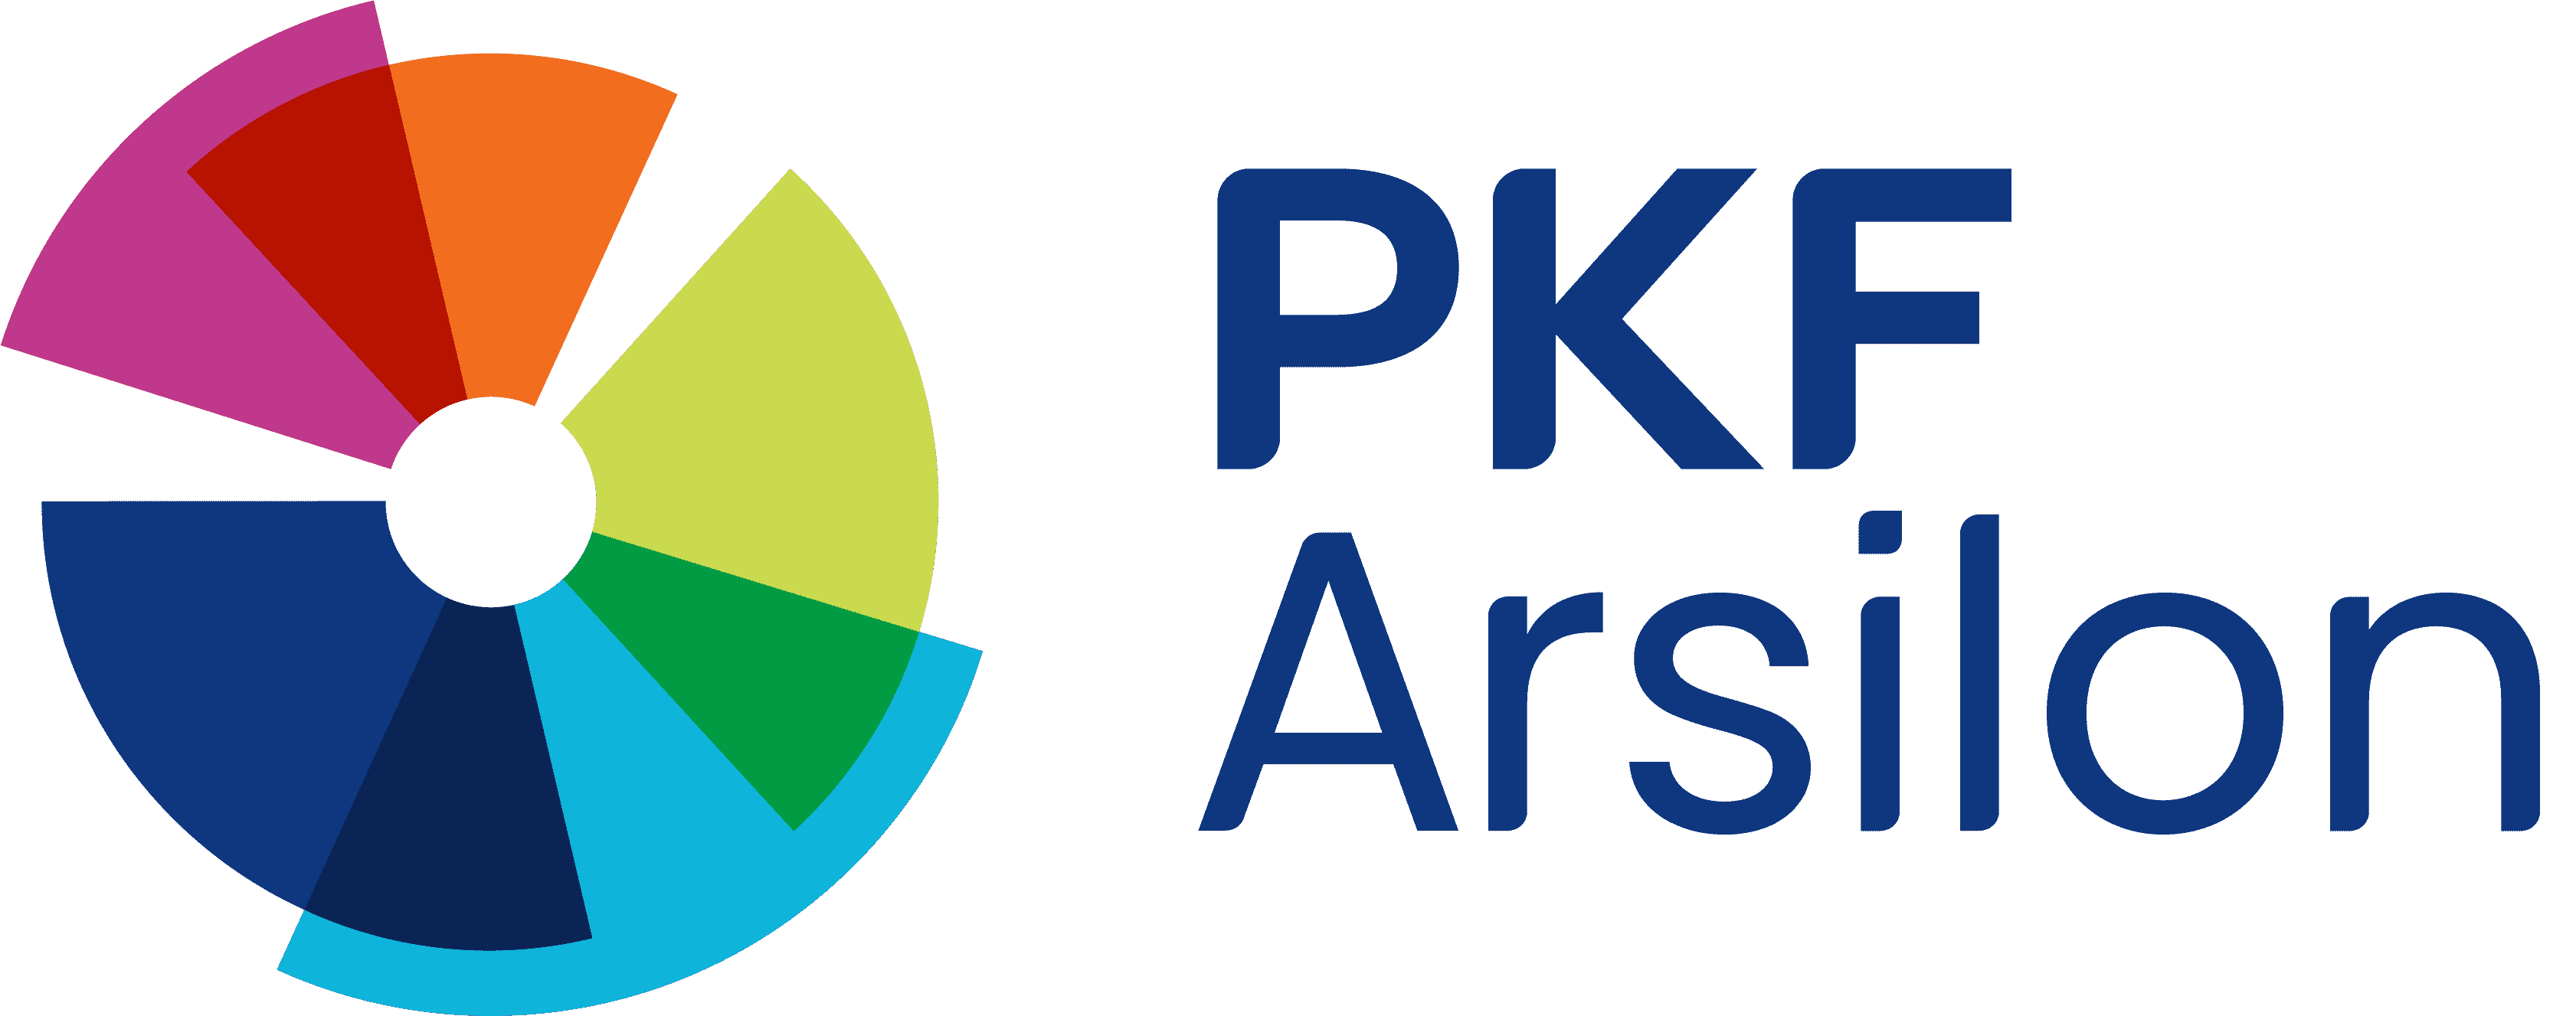 logo de PKF Arsilon